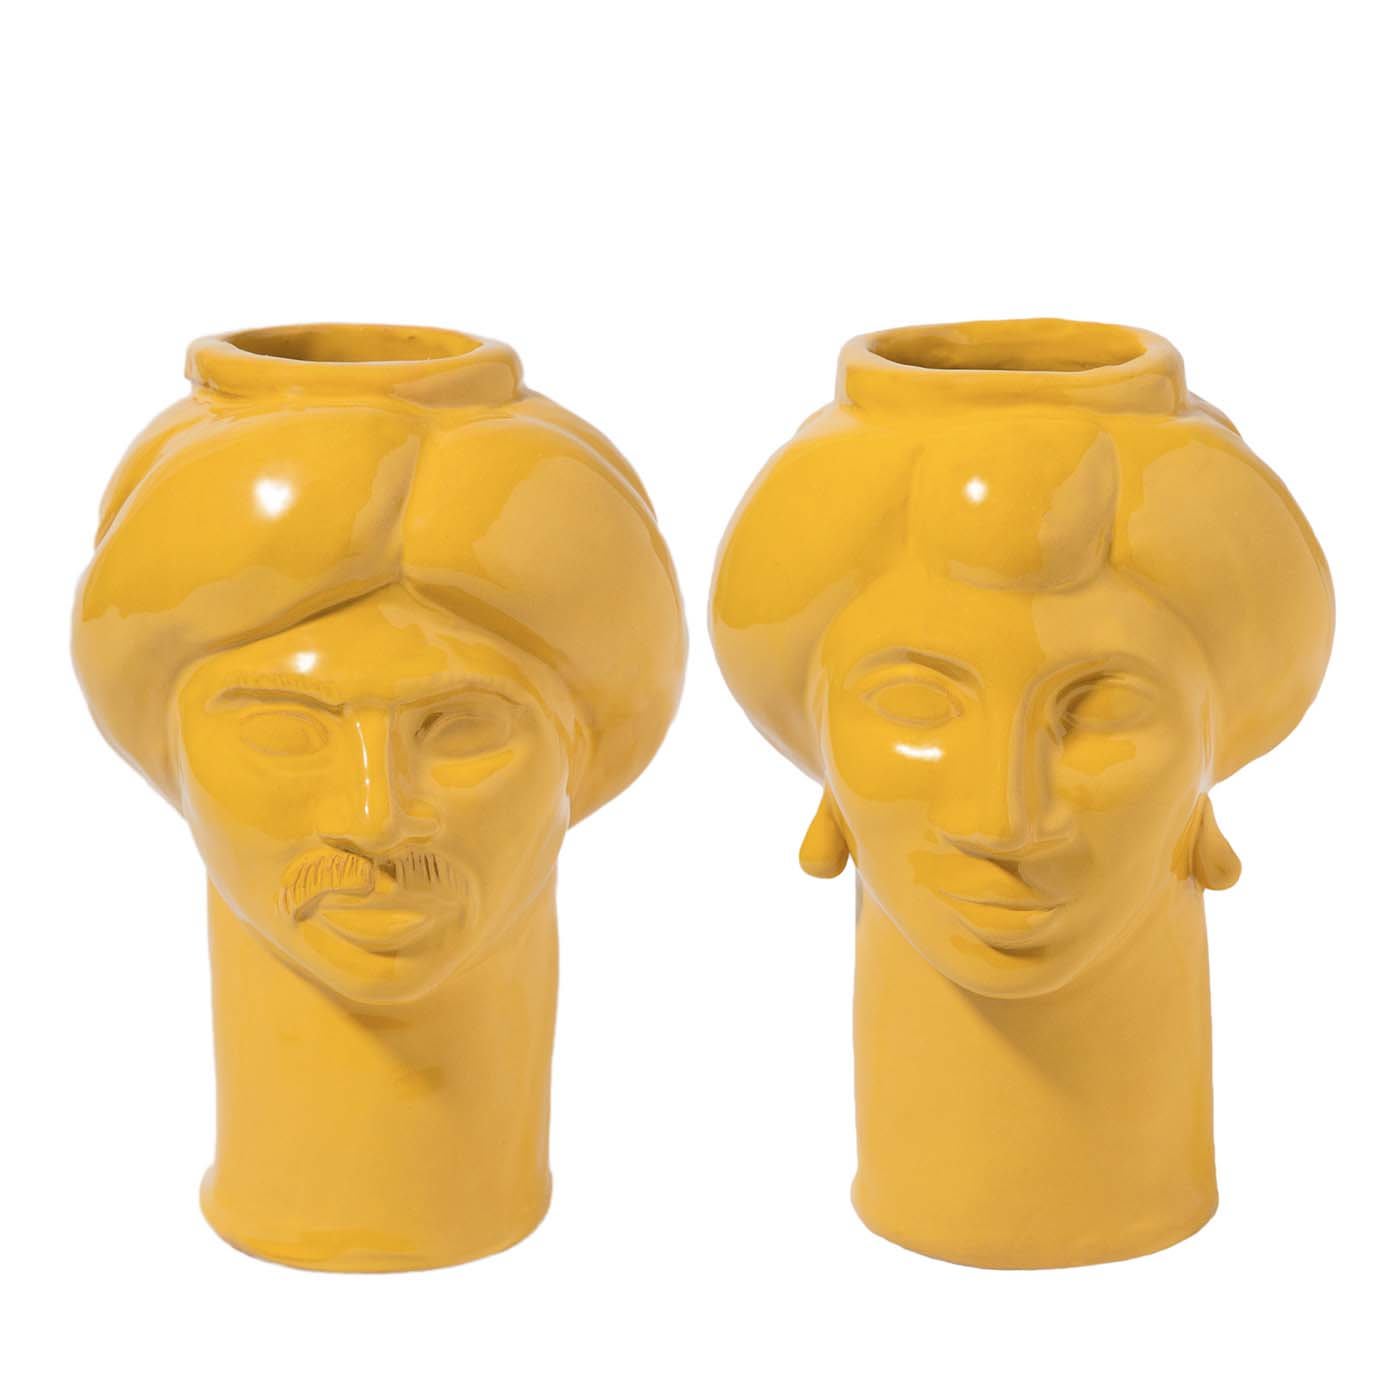 Solimano & Roxelana Yellow Vases - Crita Ceramiche